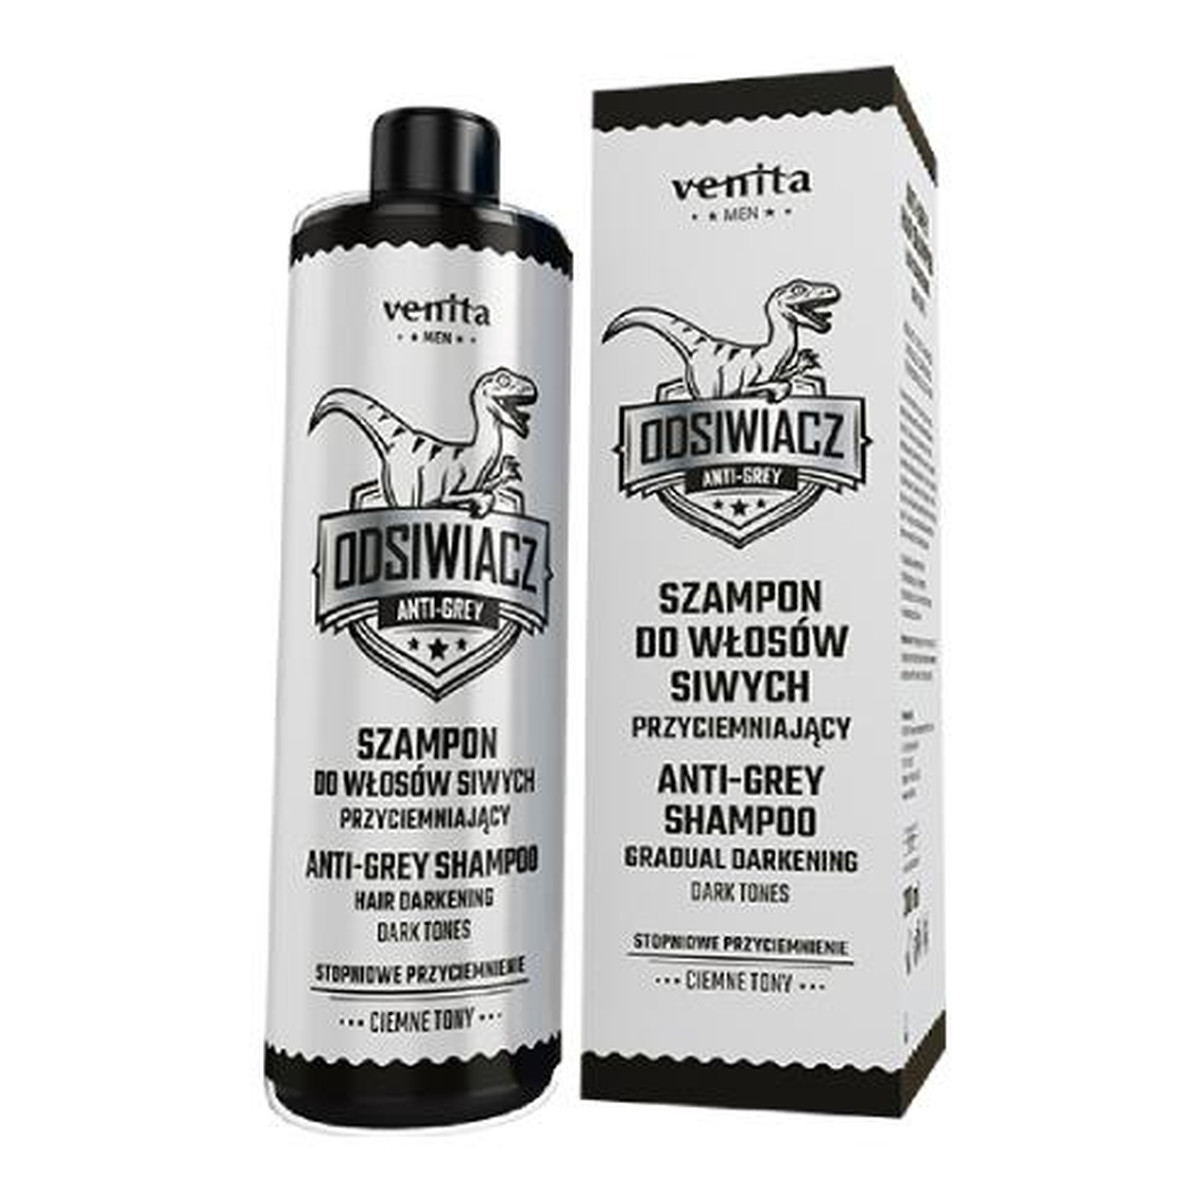 Venita Men szampon do włosów siwych przyciemniający ciemne tony 200ml